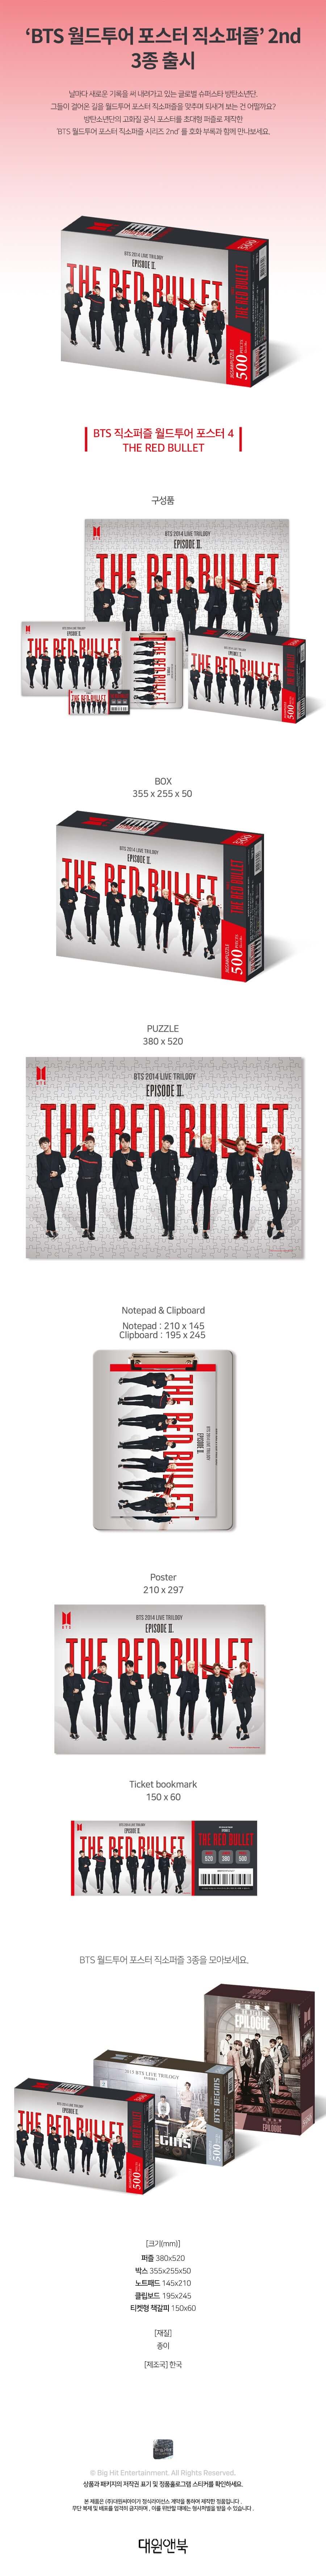 ملصق جولة BTS Jigsaw Puzzle World Tour 4: The Red Bullet